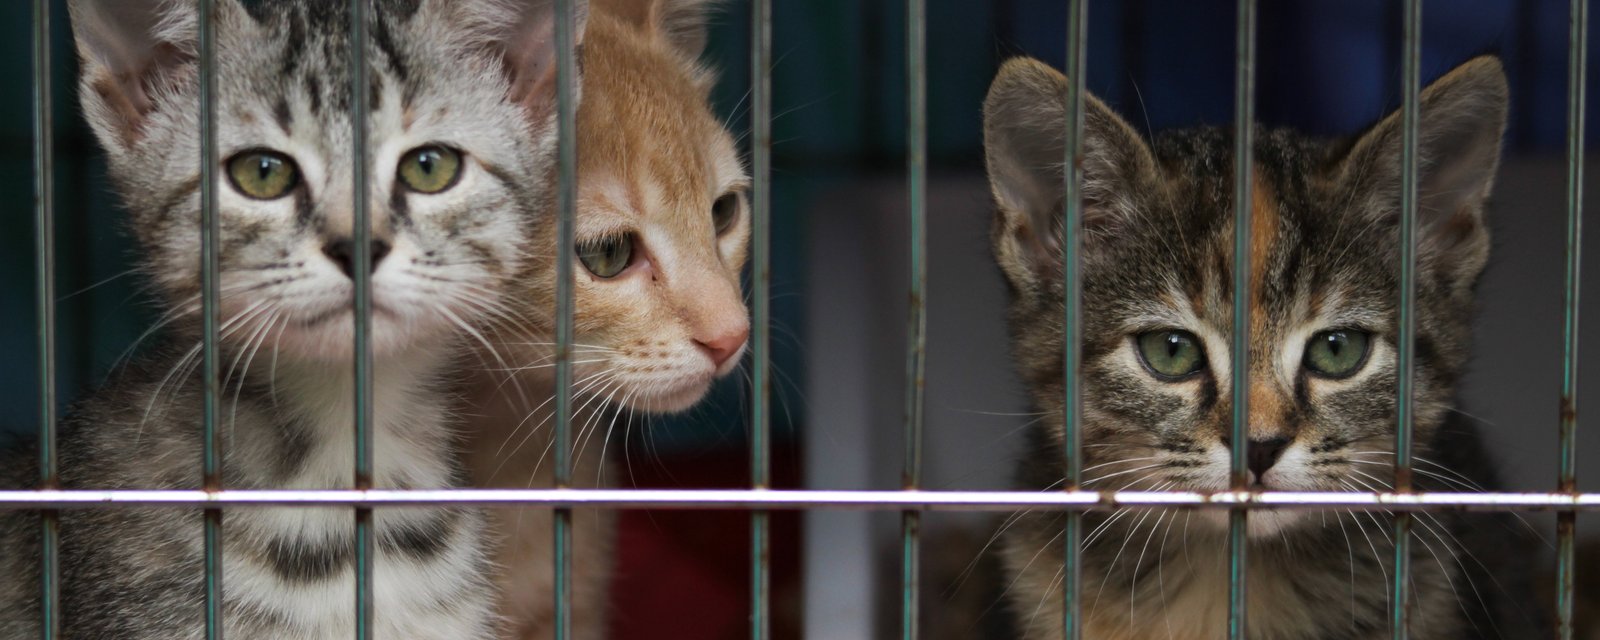 Les refuges animaliers du Québec font face à une forte hausse des abandons de chats.